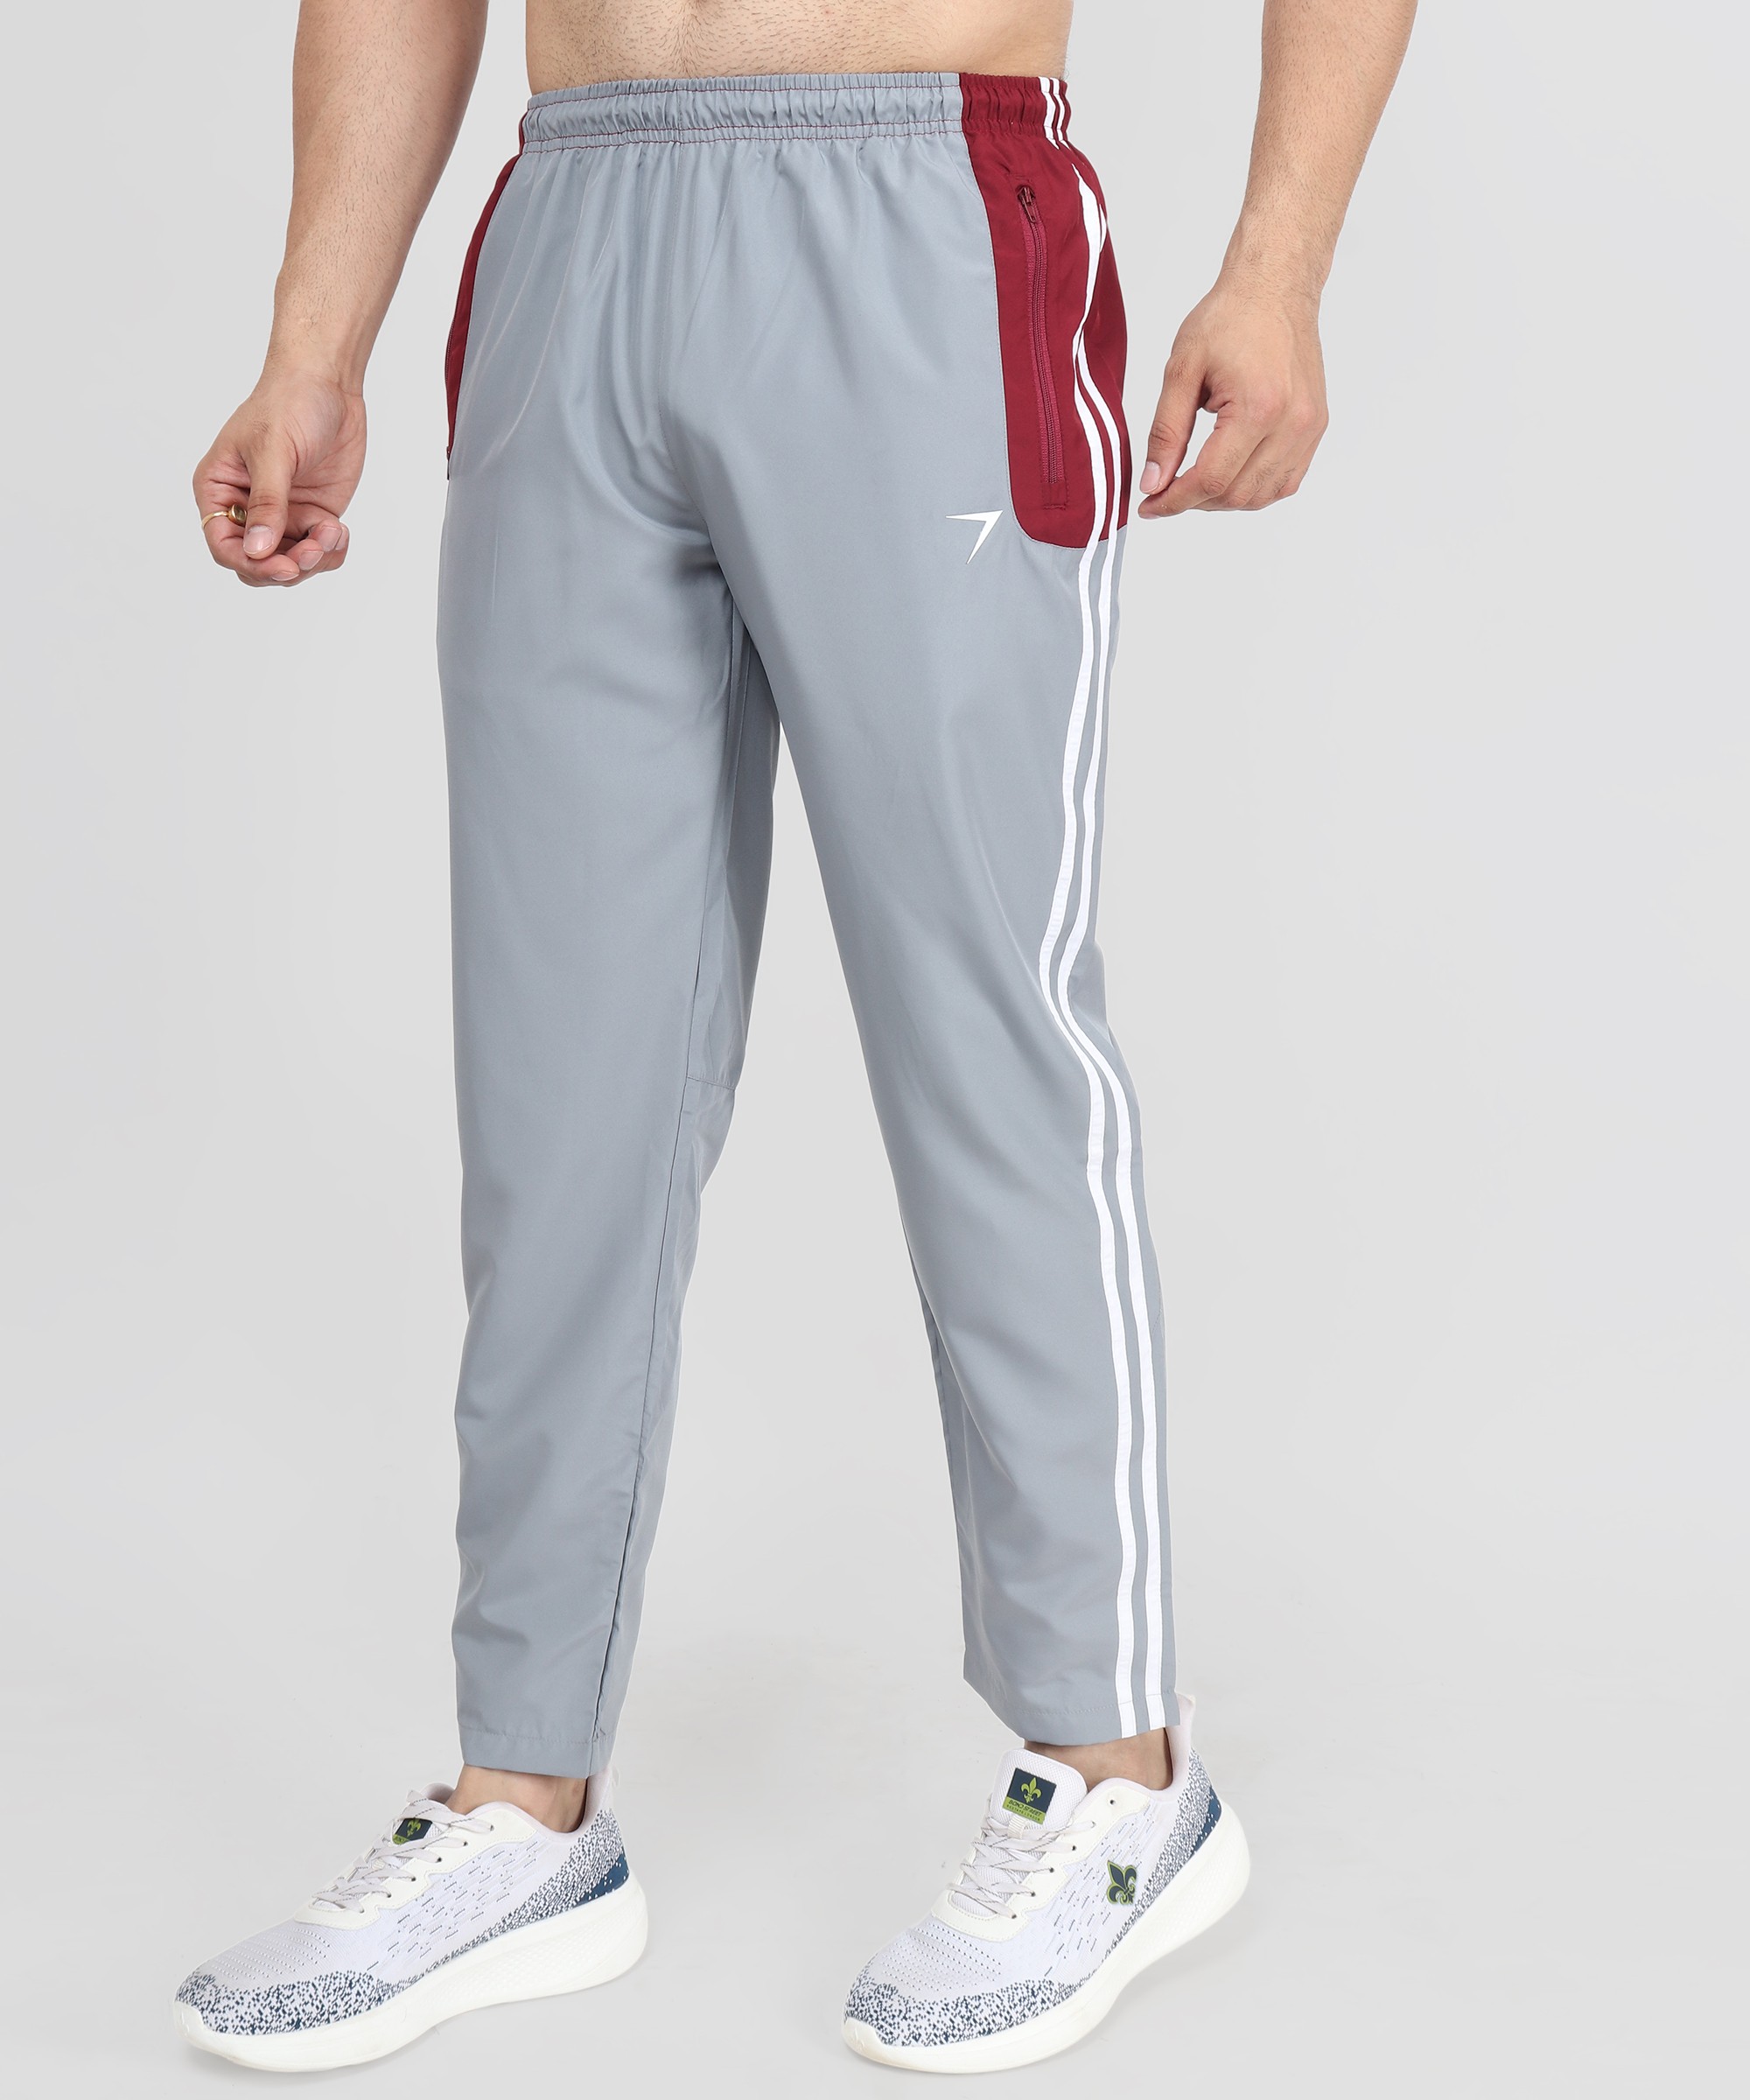 MIER Men's Cotton Sweatpants with Pockets Sports Knit Pants